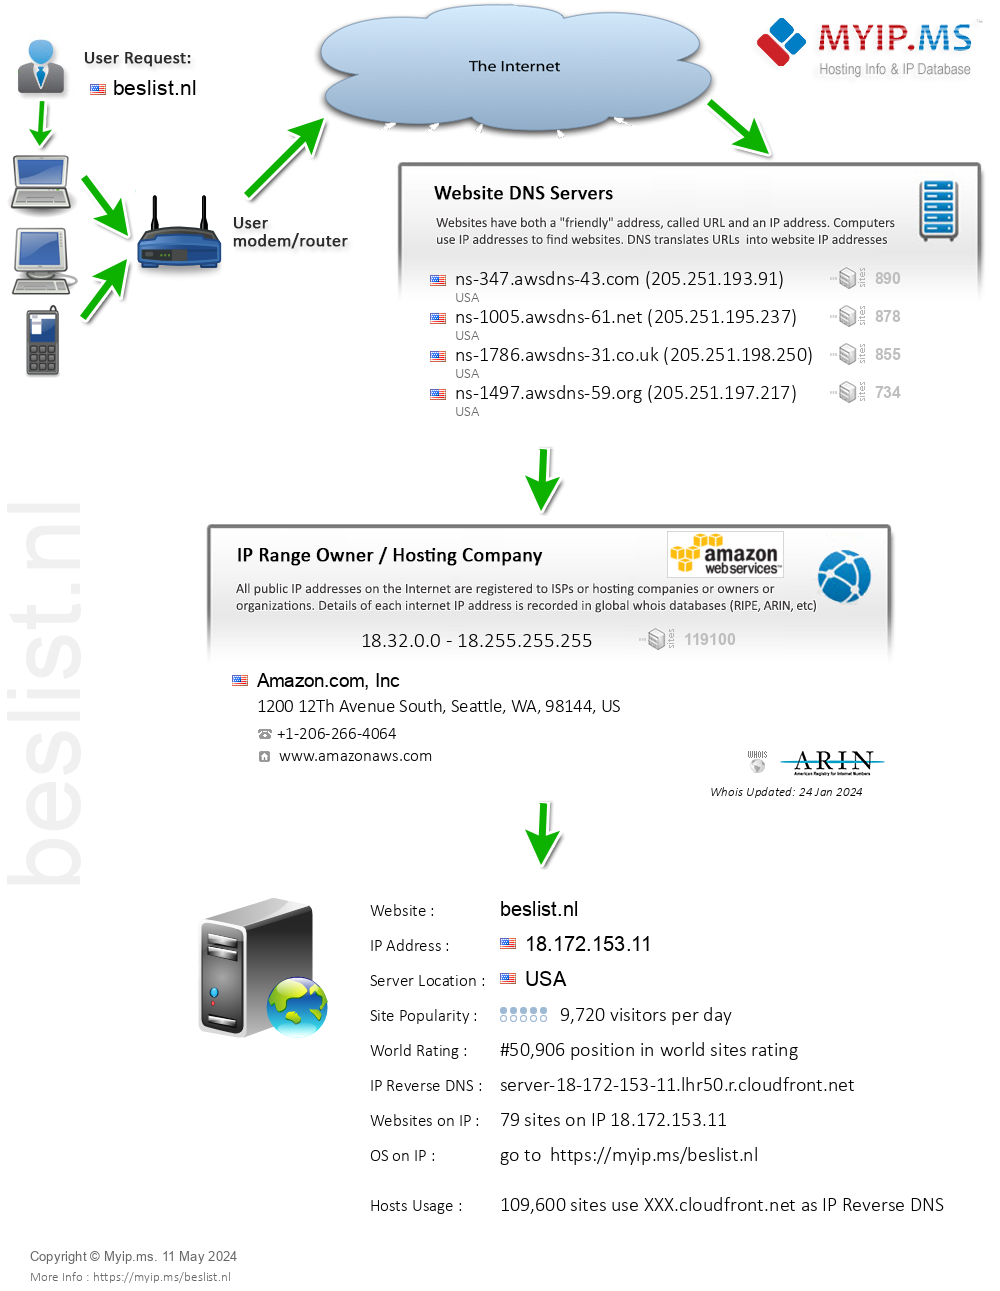 Beslist.nl - Website Hosting Visual IP Diagram